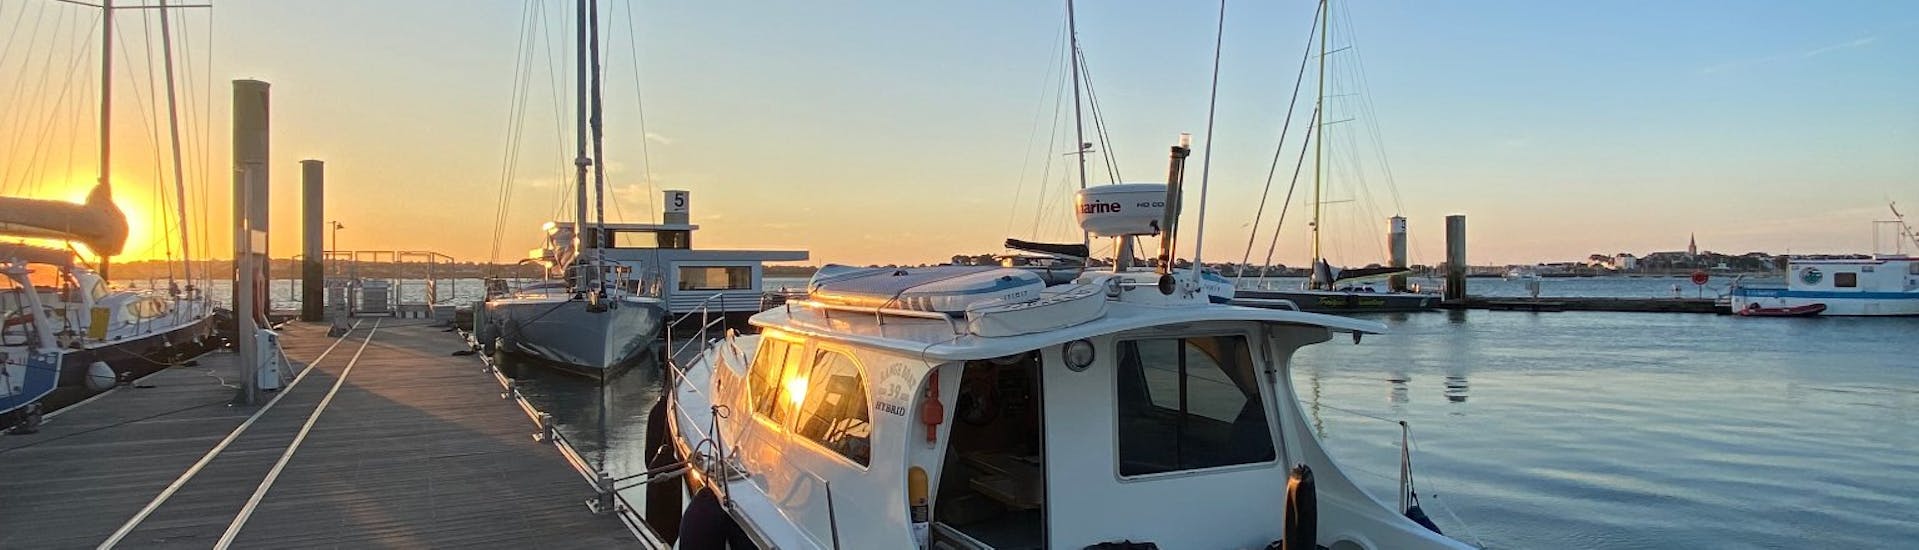 Une photo du bateau KeyLargo au port pendant le coucher de soleil.